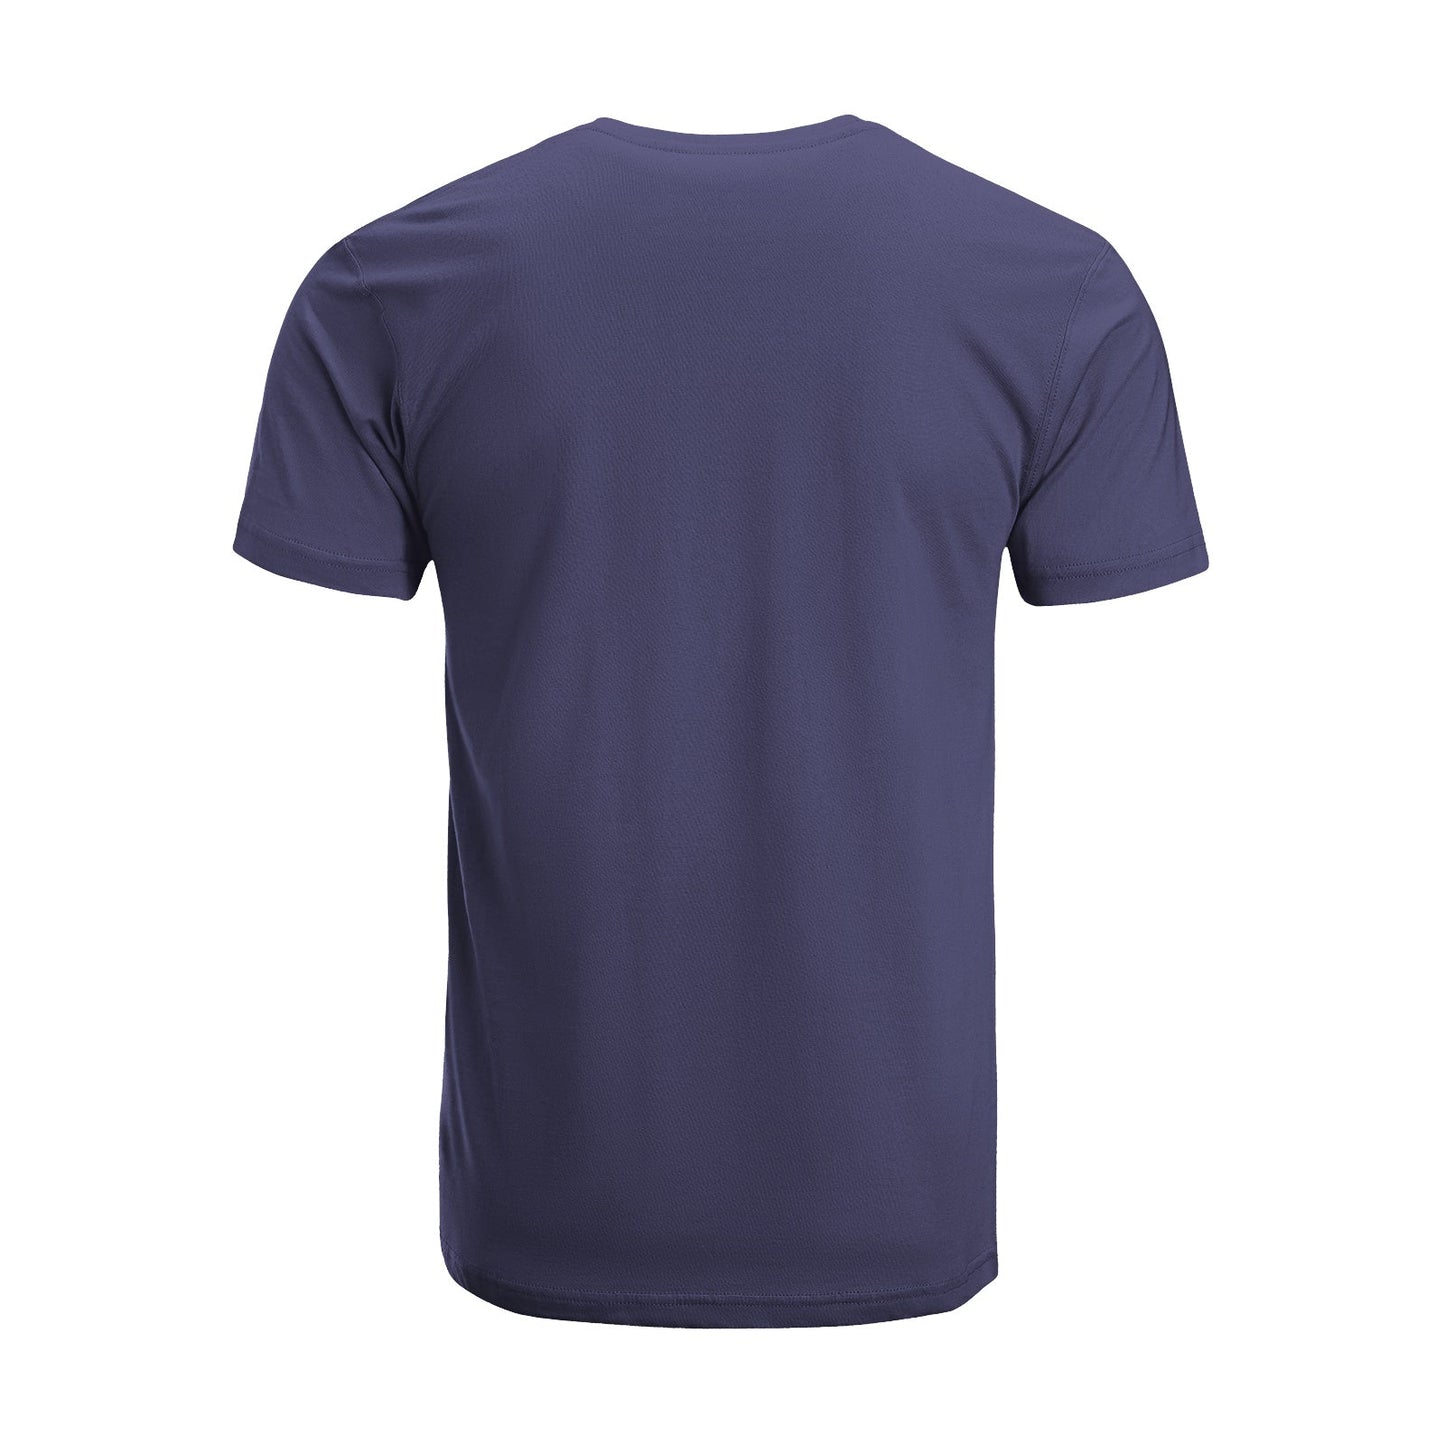 Unisex Short Sleeve Crew Neck Cotton Jersey T-Shirt TRUCK 34